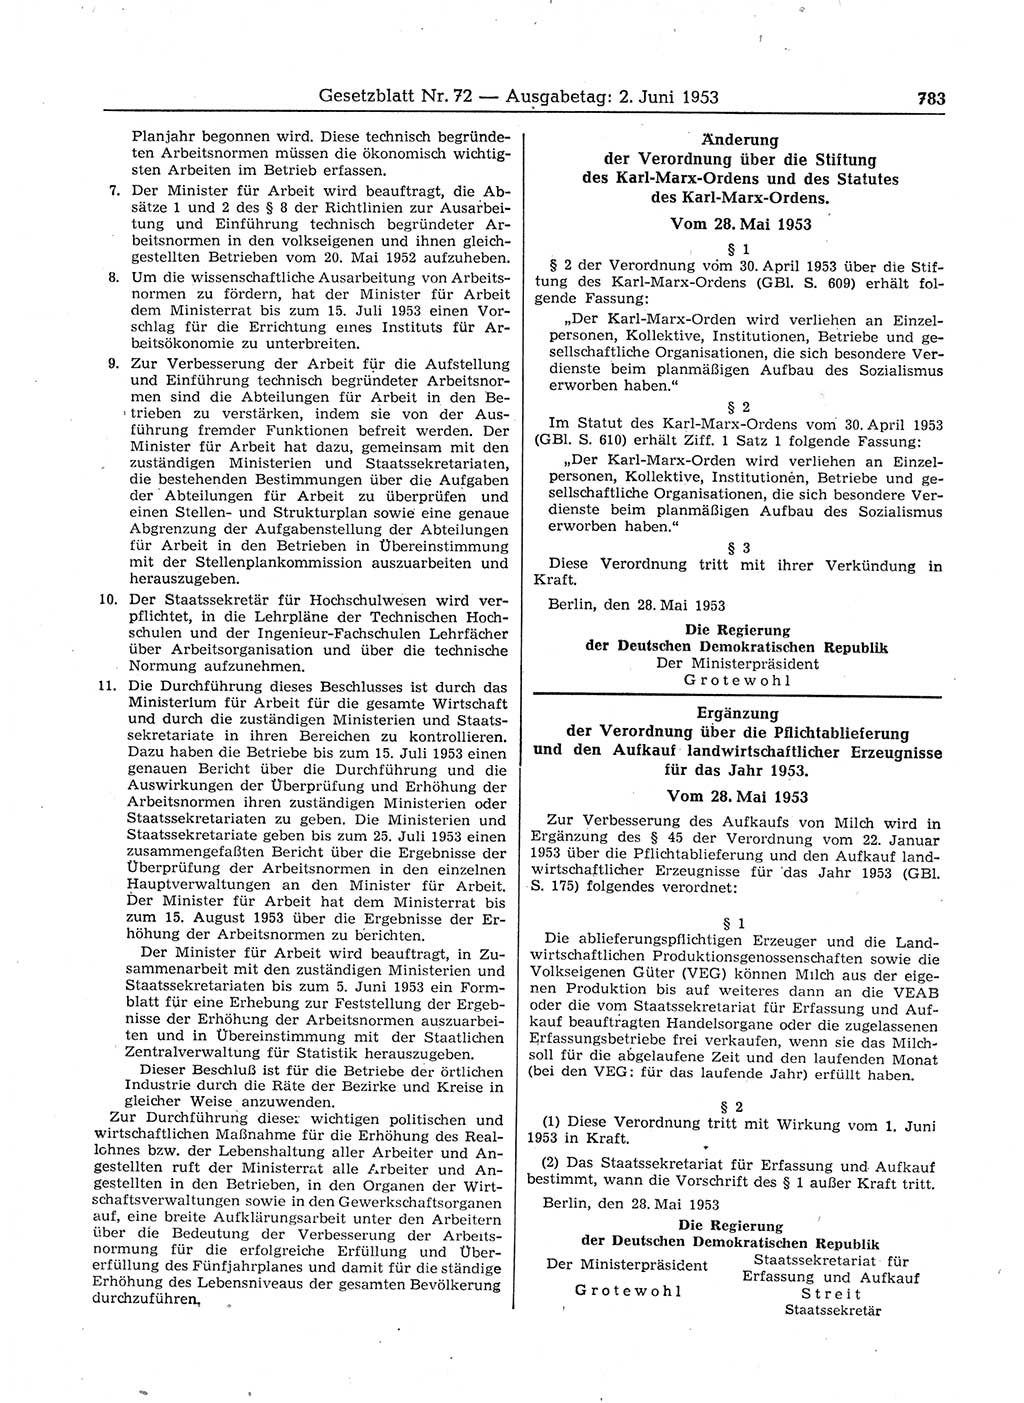 Gesetzblatt (GBl.) der Deutschen Demokratischen Republik (DDR) 1953, Seite 783 (GBl. DDR 1953, S. 783)